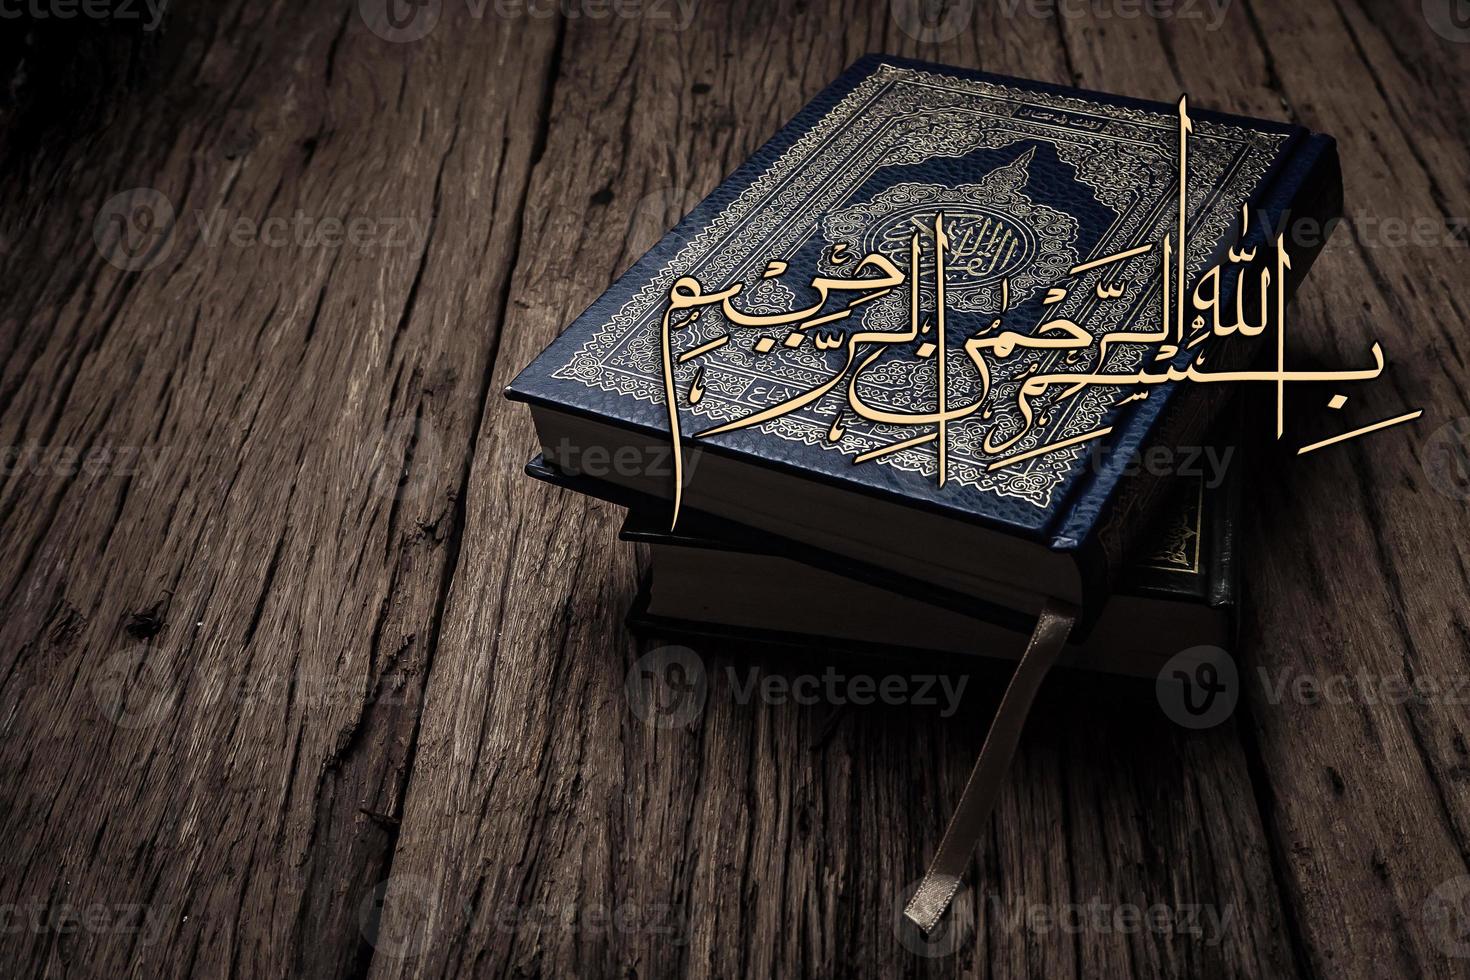 bismillah signifie au nom d'allah l'art arabe avec le livre sacré du coran des musulmans objet public de tous les musulmans. photo